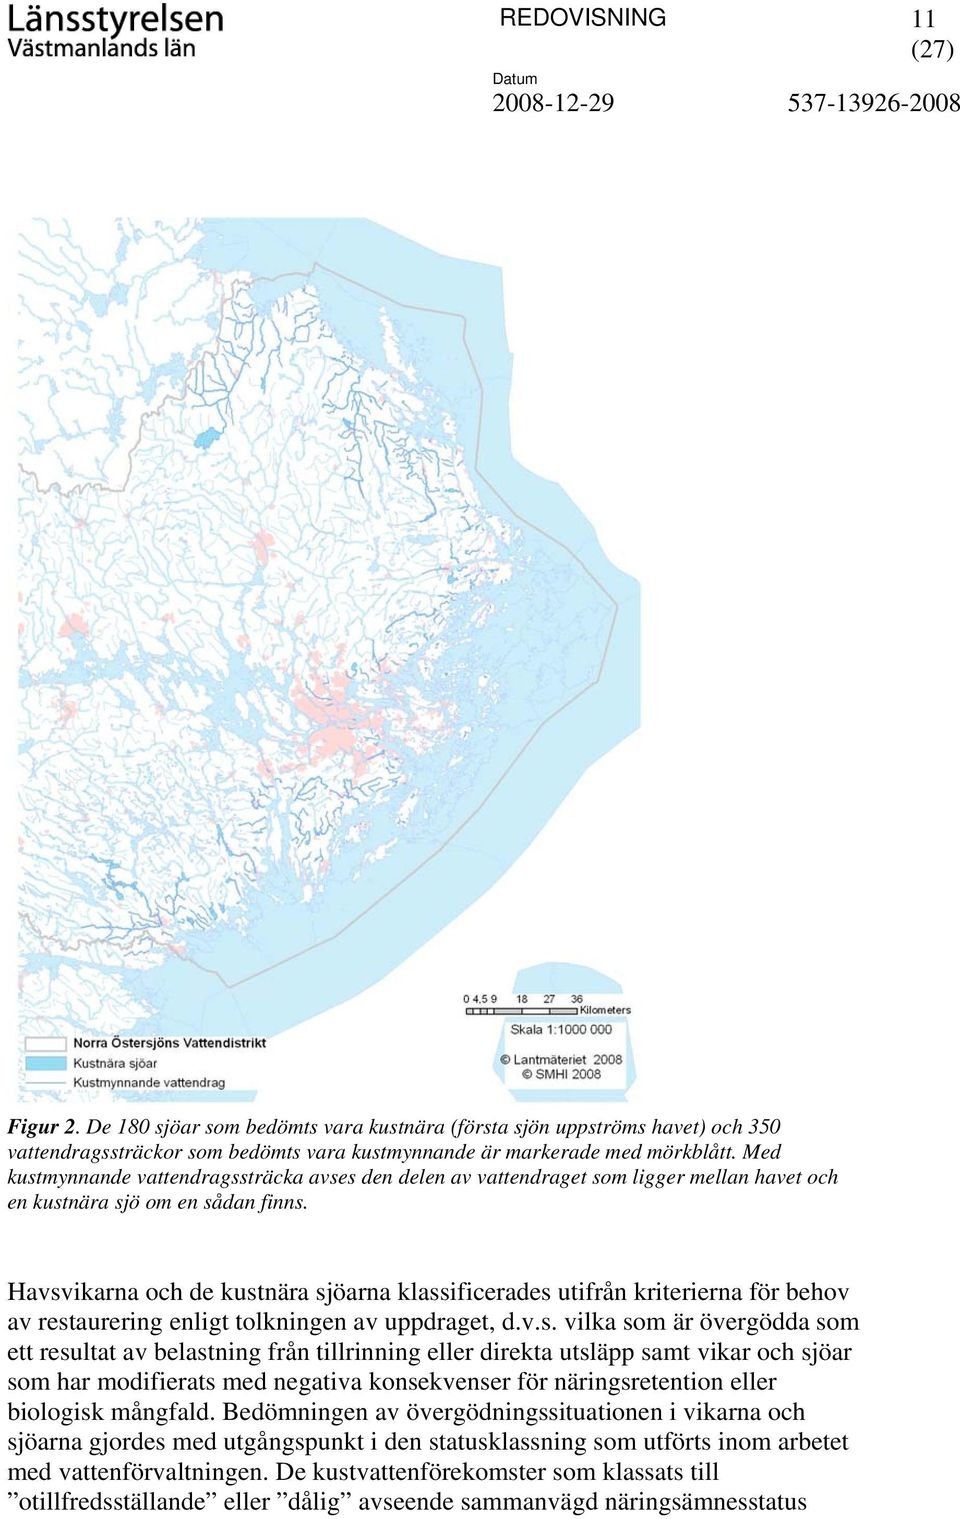 Havsvikarna och de kustnära sjöarna klassificerades utifrån kriterierna för behov av restaurering enligt tolkningen av uppdraget, d.v.s. vilka som är övergödda som ett resultat av belastning från